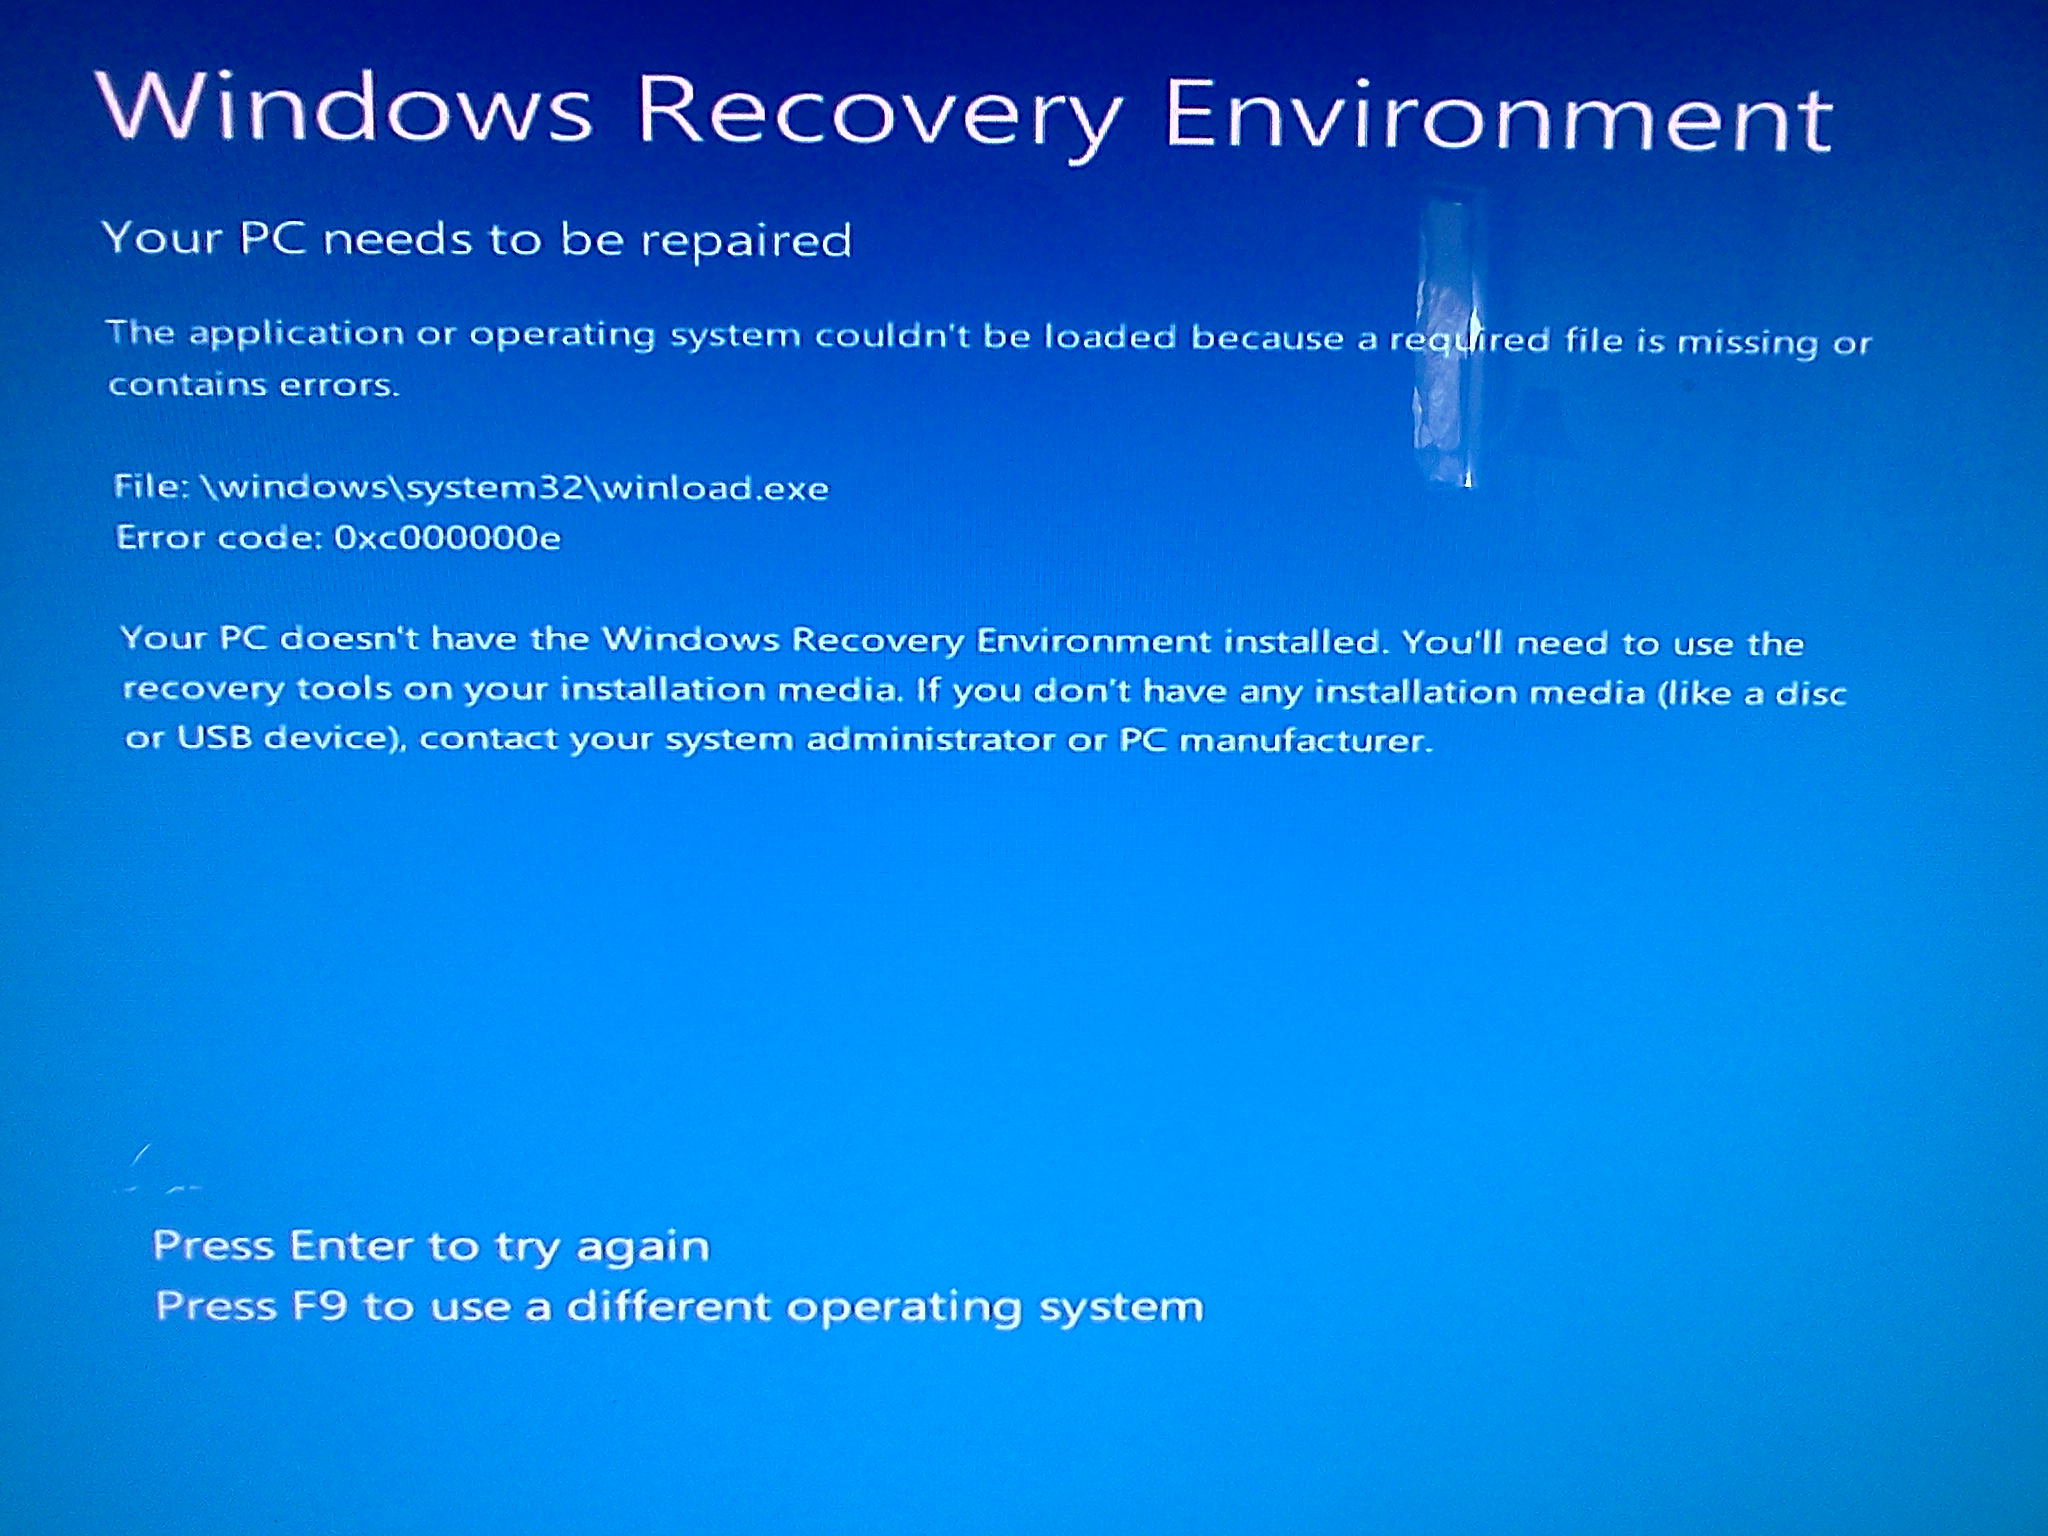 Восстановление системы windows 7. использование среды восстановления windows re в windows 7